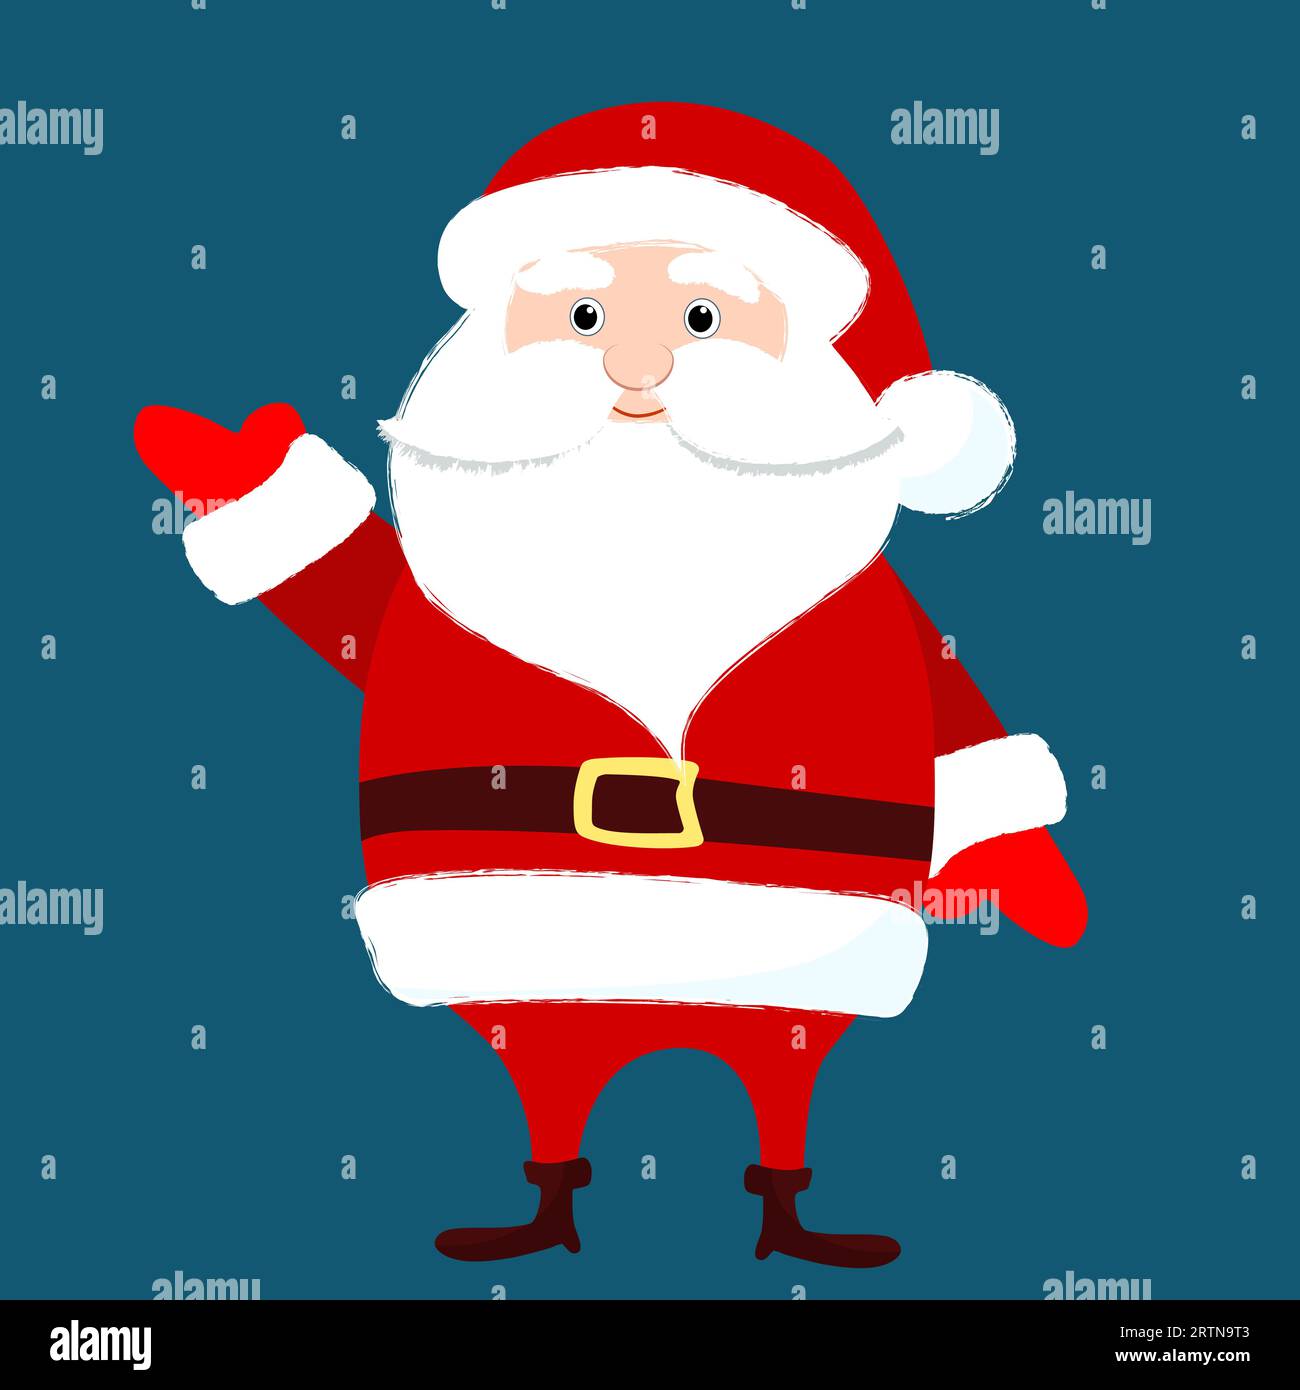 Der Weihnachtsmann steht gerade und winkt hallo. Witziges Charakterdesign für den Winter. Weihnachtsillustration im Zeichentrickstil. Stock Vektor